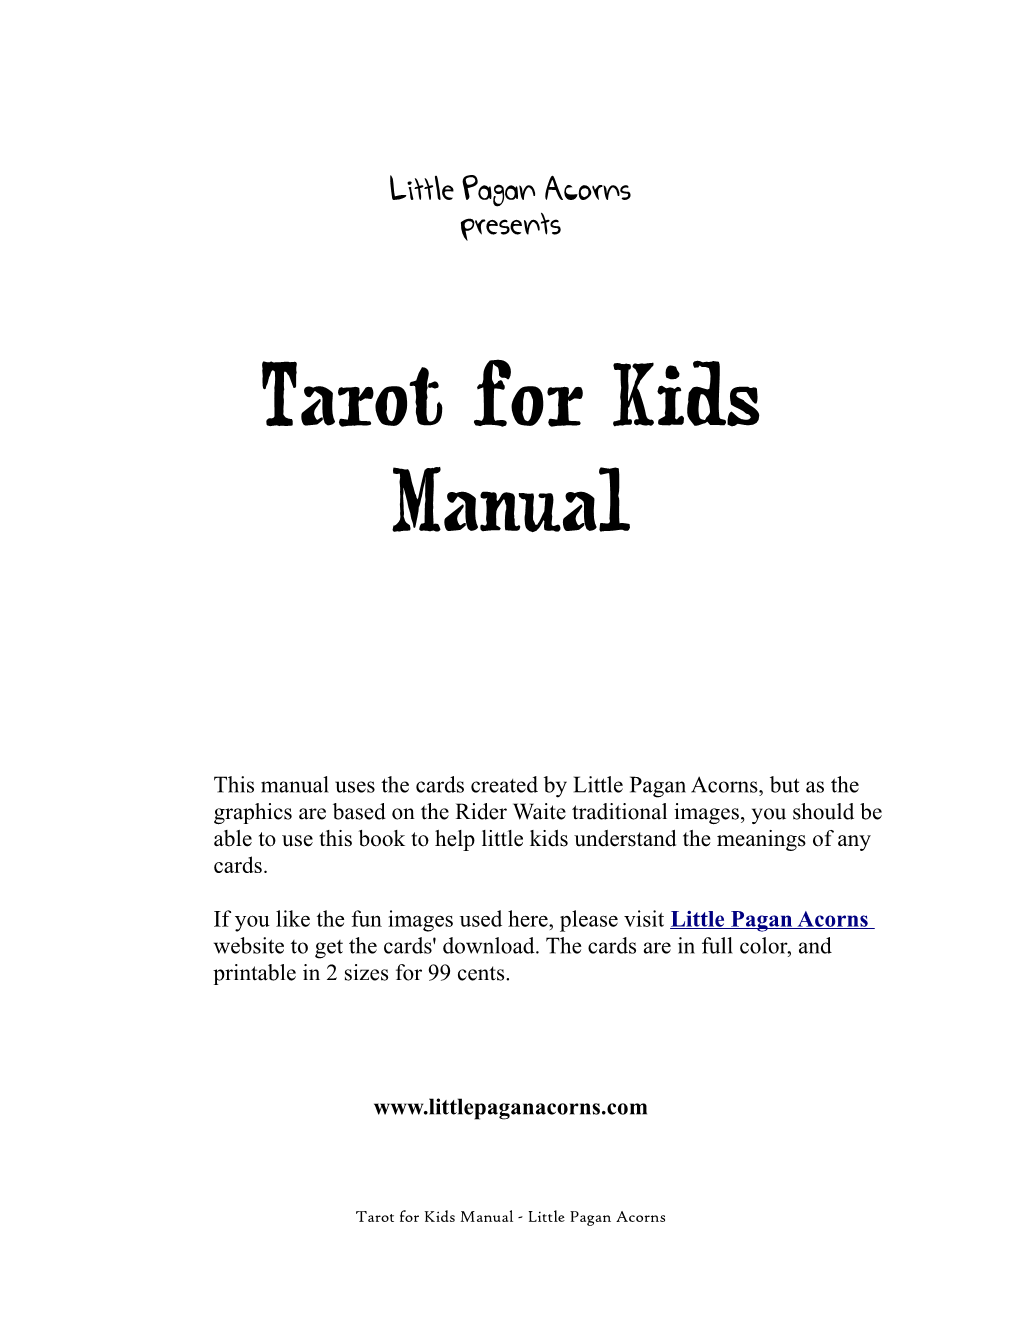 Tarot for Kids Manual